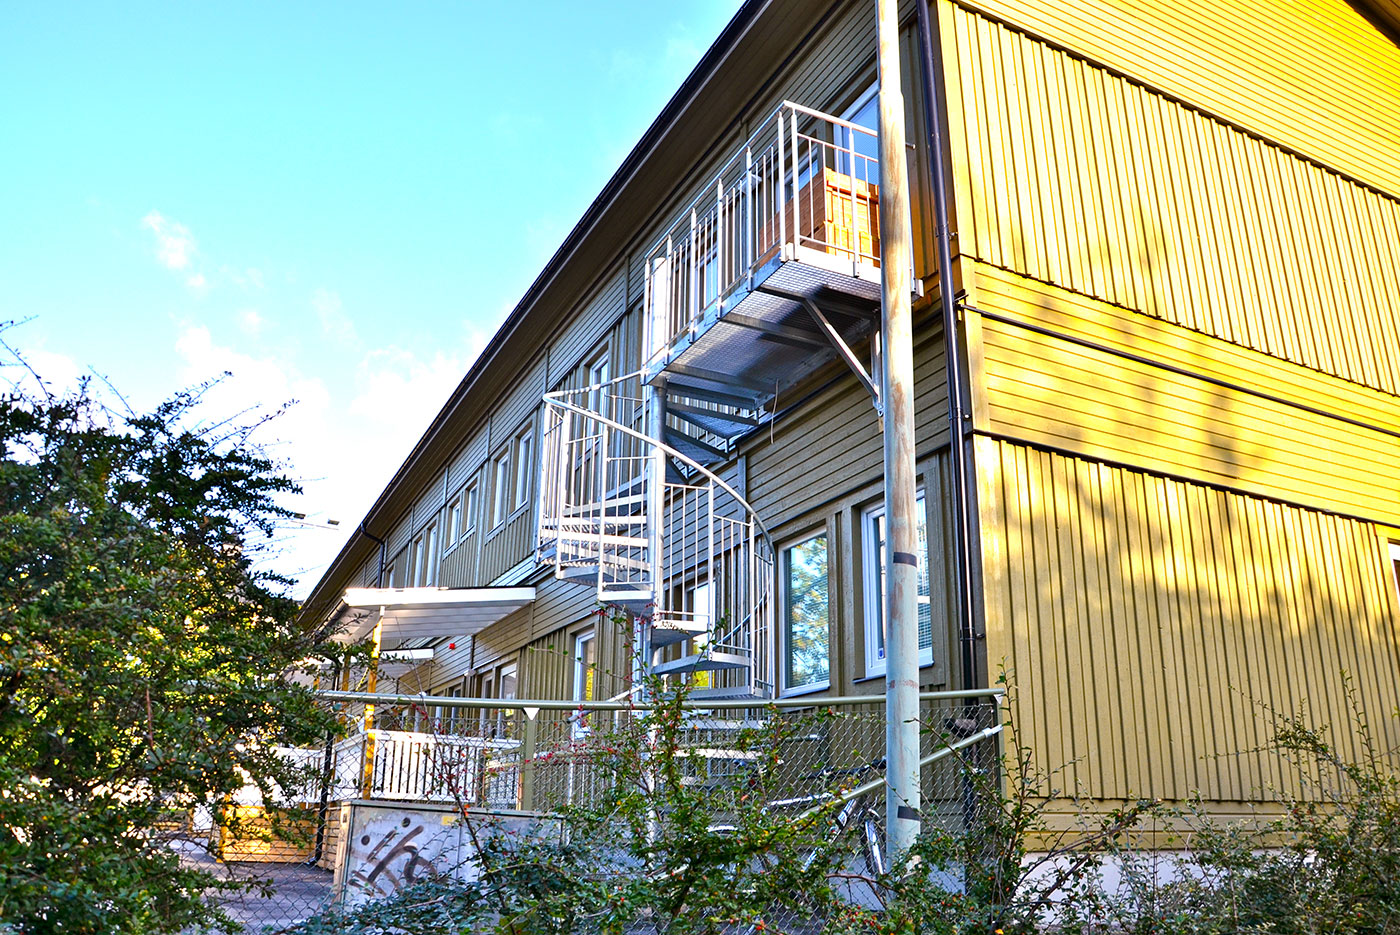 Invid fotbollsplanen nedanför Sofia skola på Södermalm, har PCS Modulsystem skapat en förskolelokal med 4 avdelningar i 2 plan.